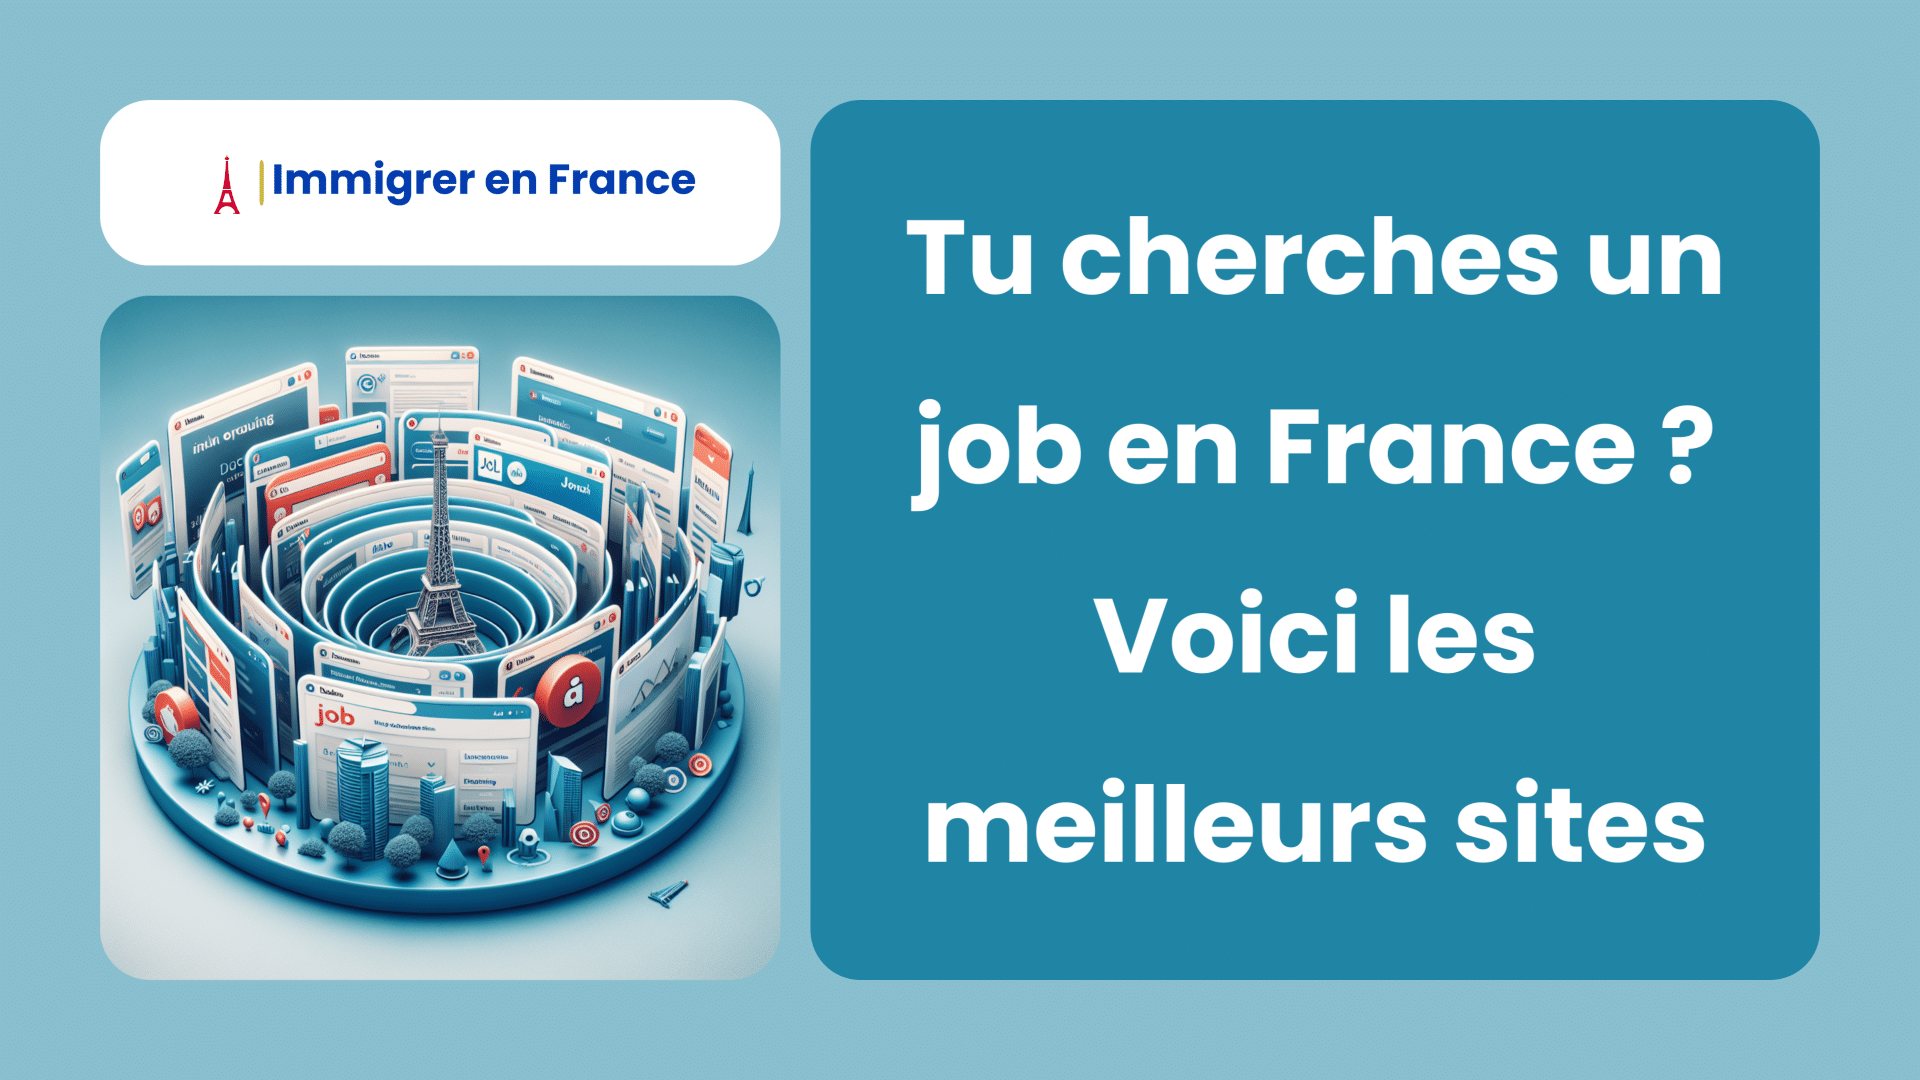 Tu cherches un job en France Voici les meilleurs sites pour les étrangers